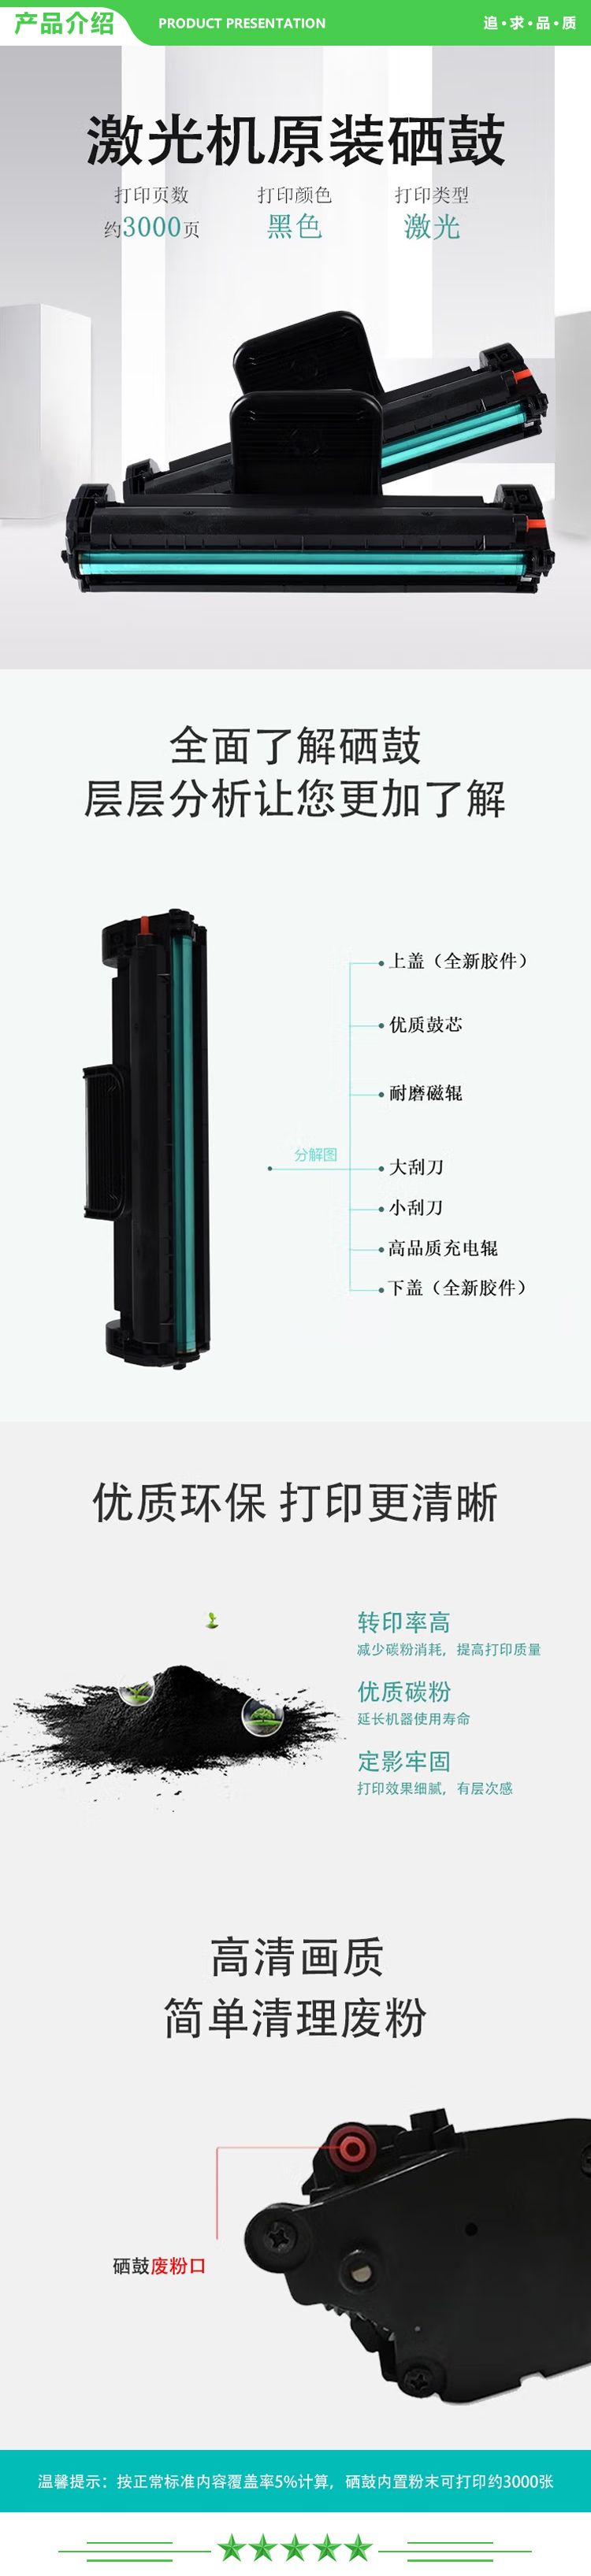 沧田 CP-0825A 激光打印机专用硒鼓墨粉.jpg